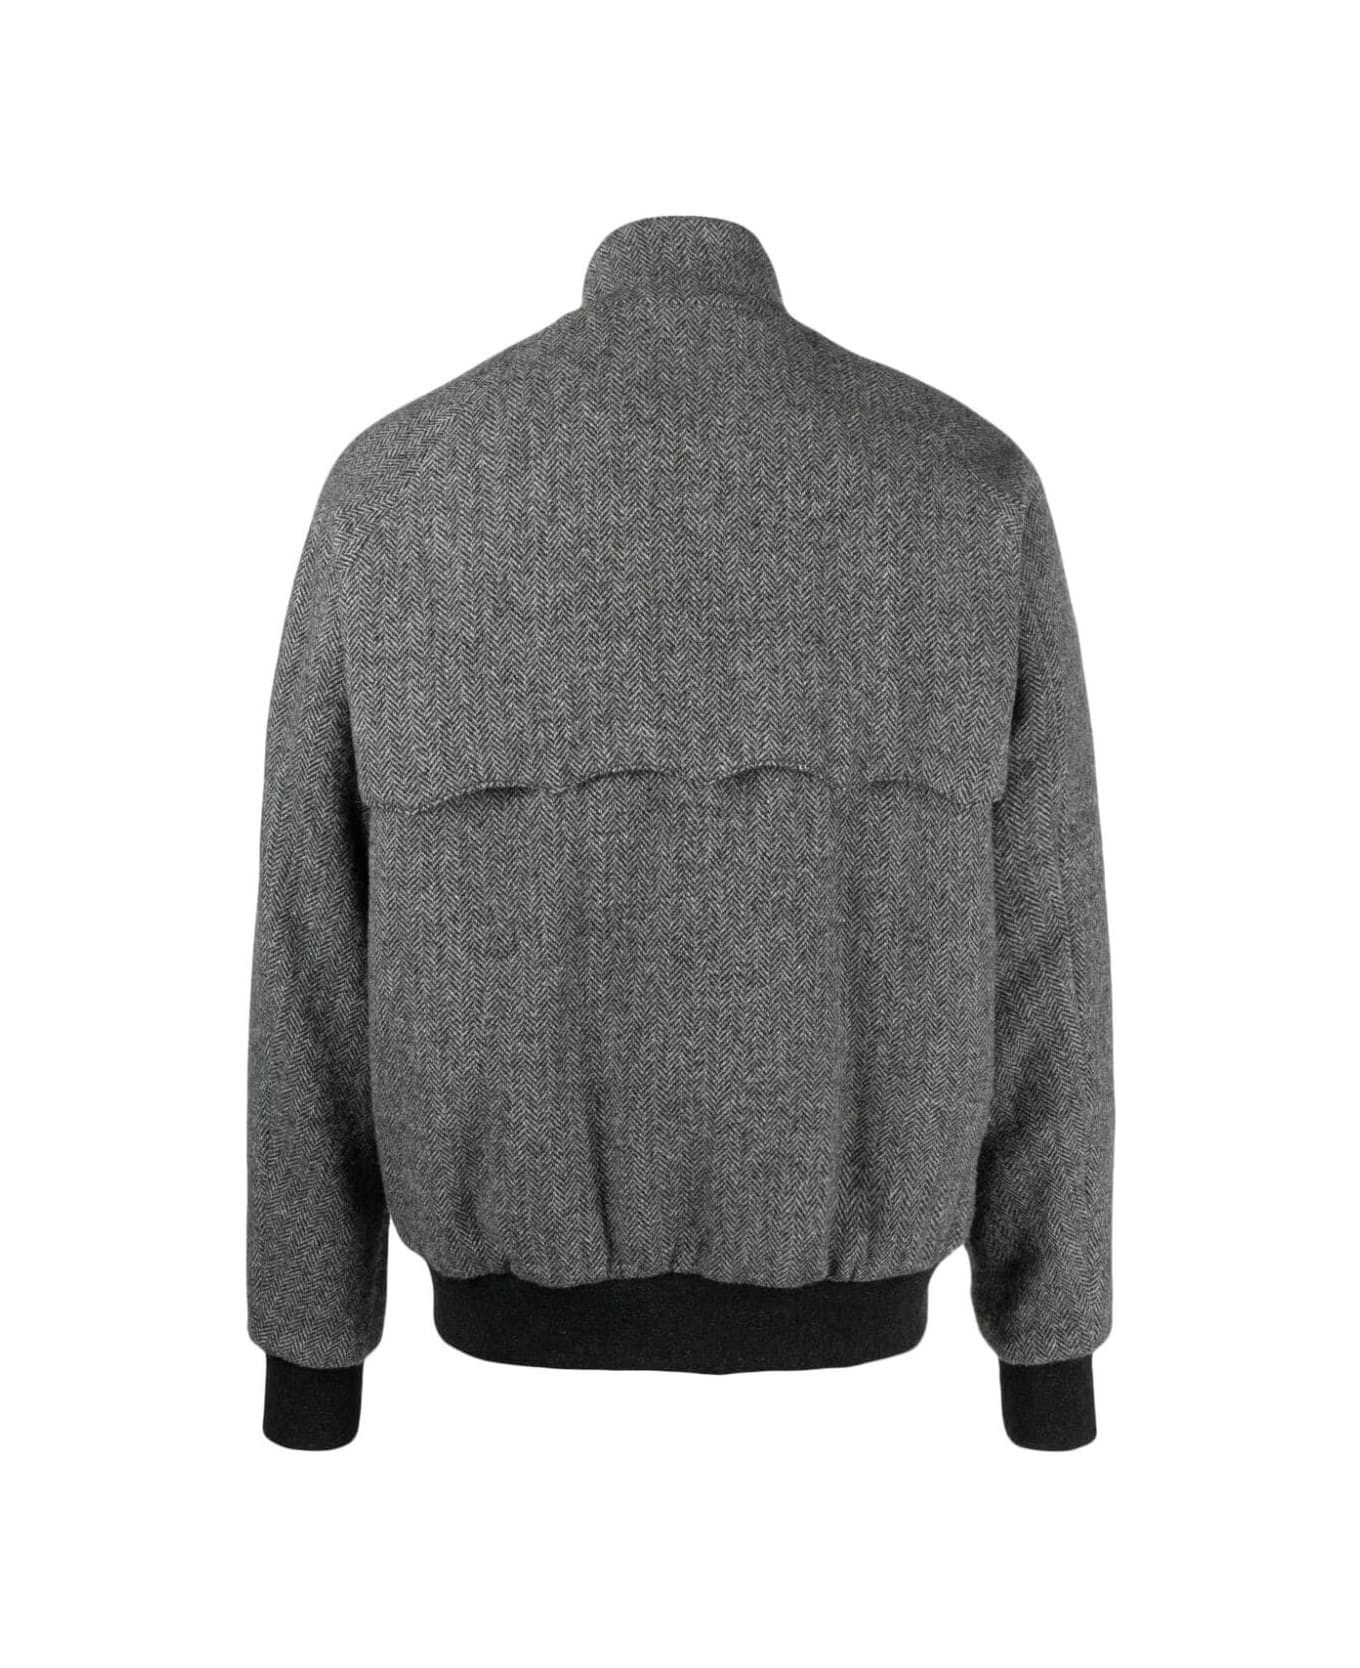 Baracuta G9 Af Pocket Pattern Wool - Herringbone Grey ジャケット